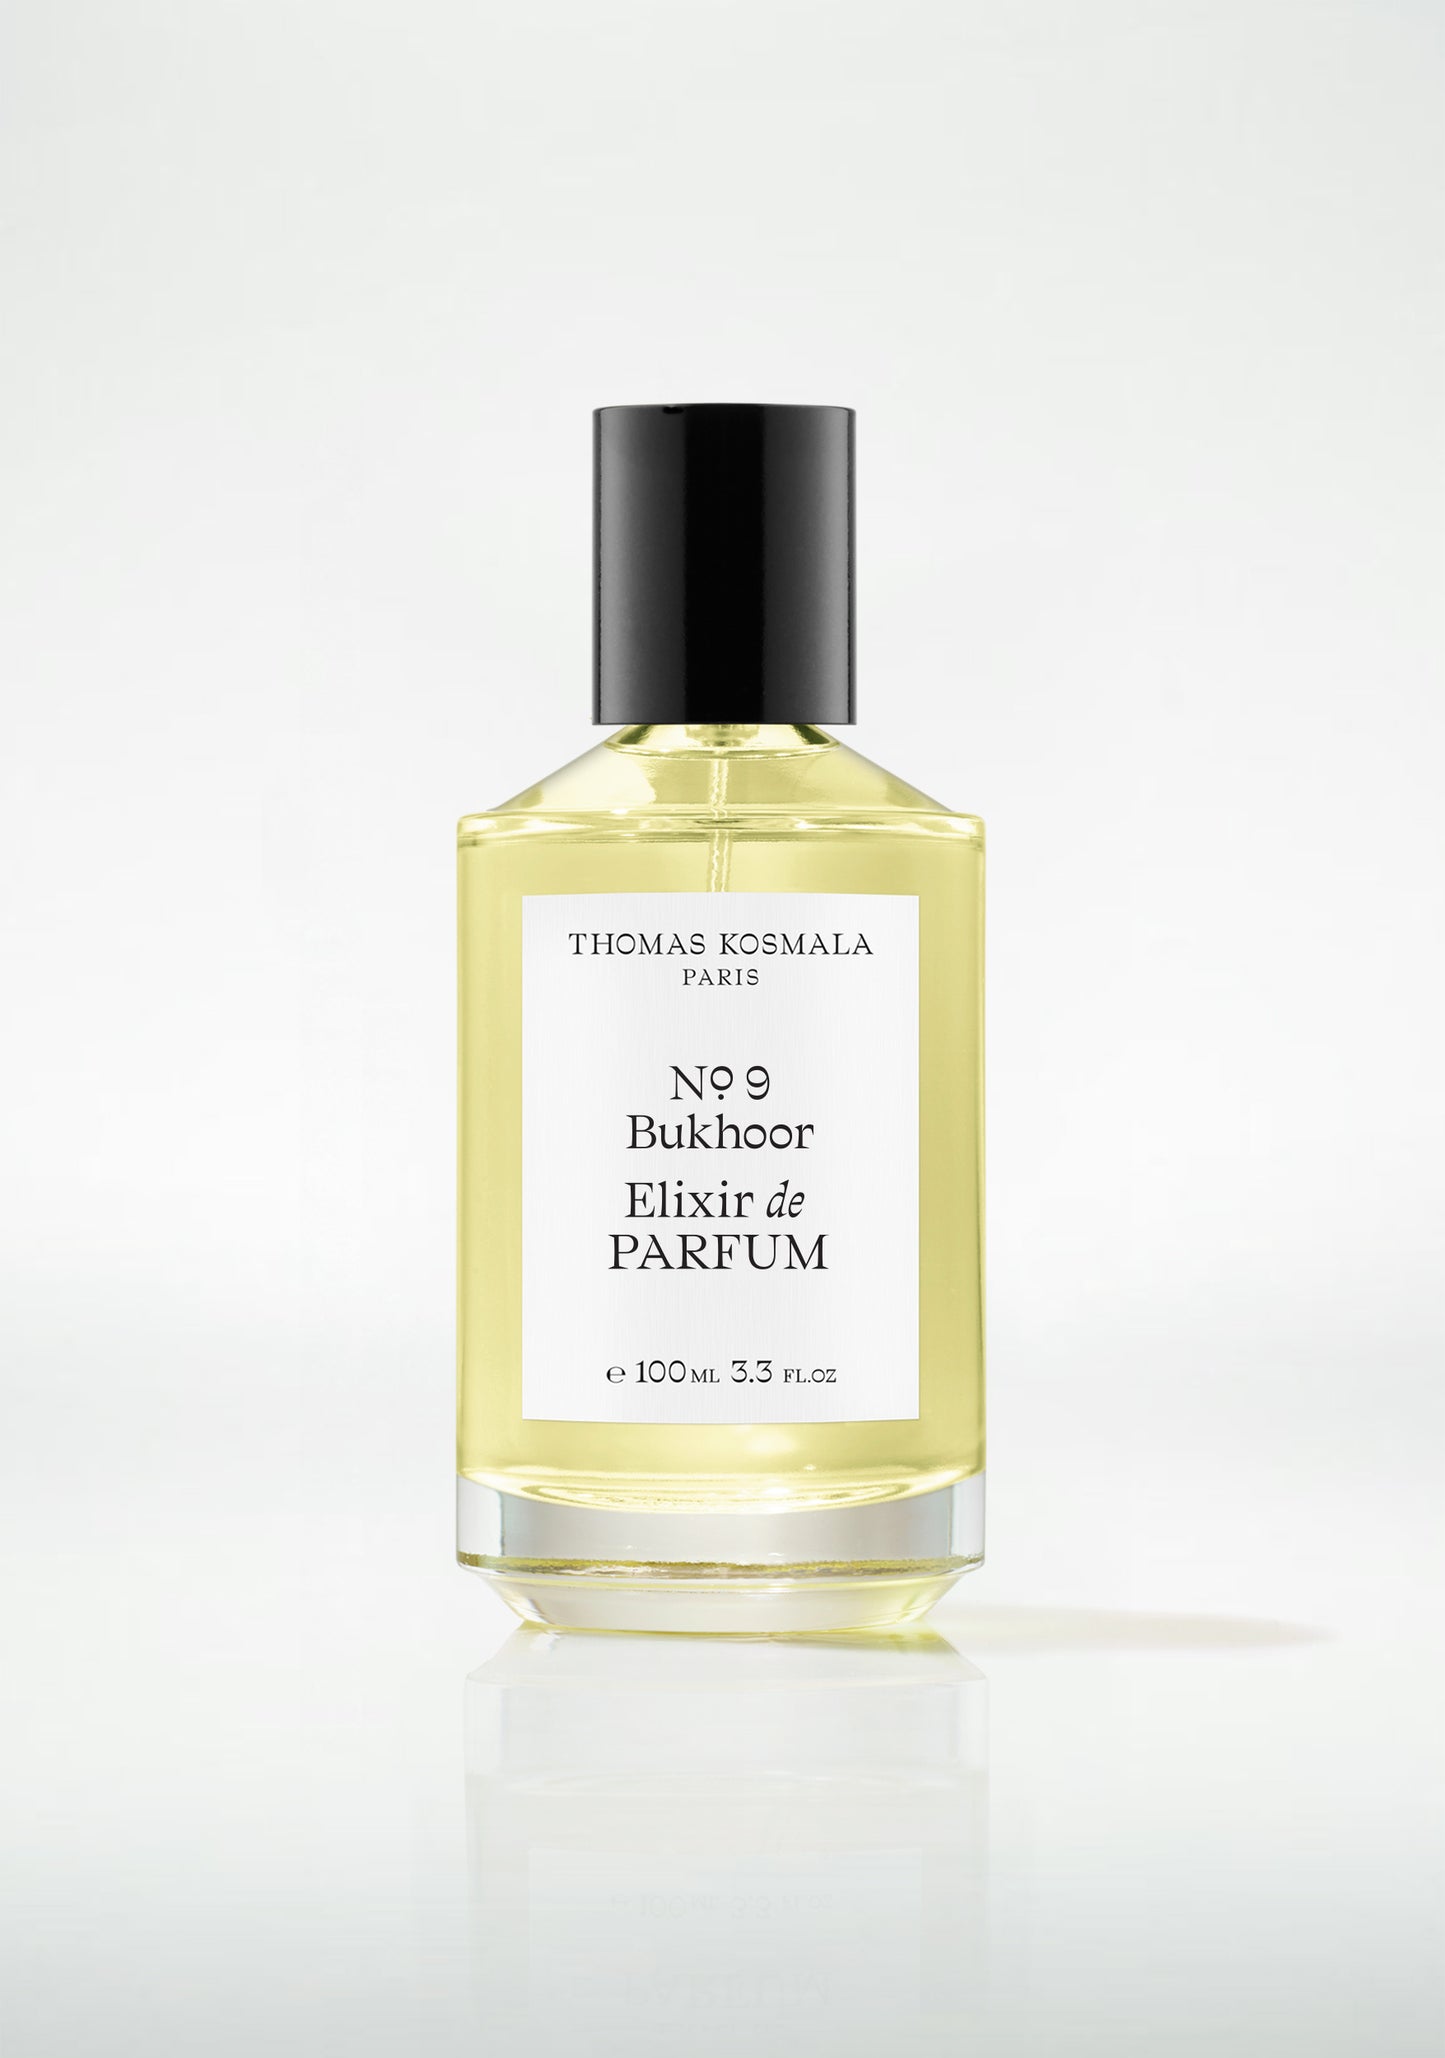 No. 9 Bukhoor Elixir de Parfum